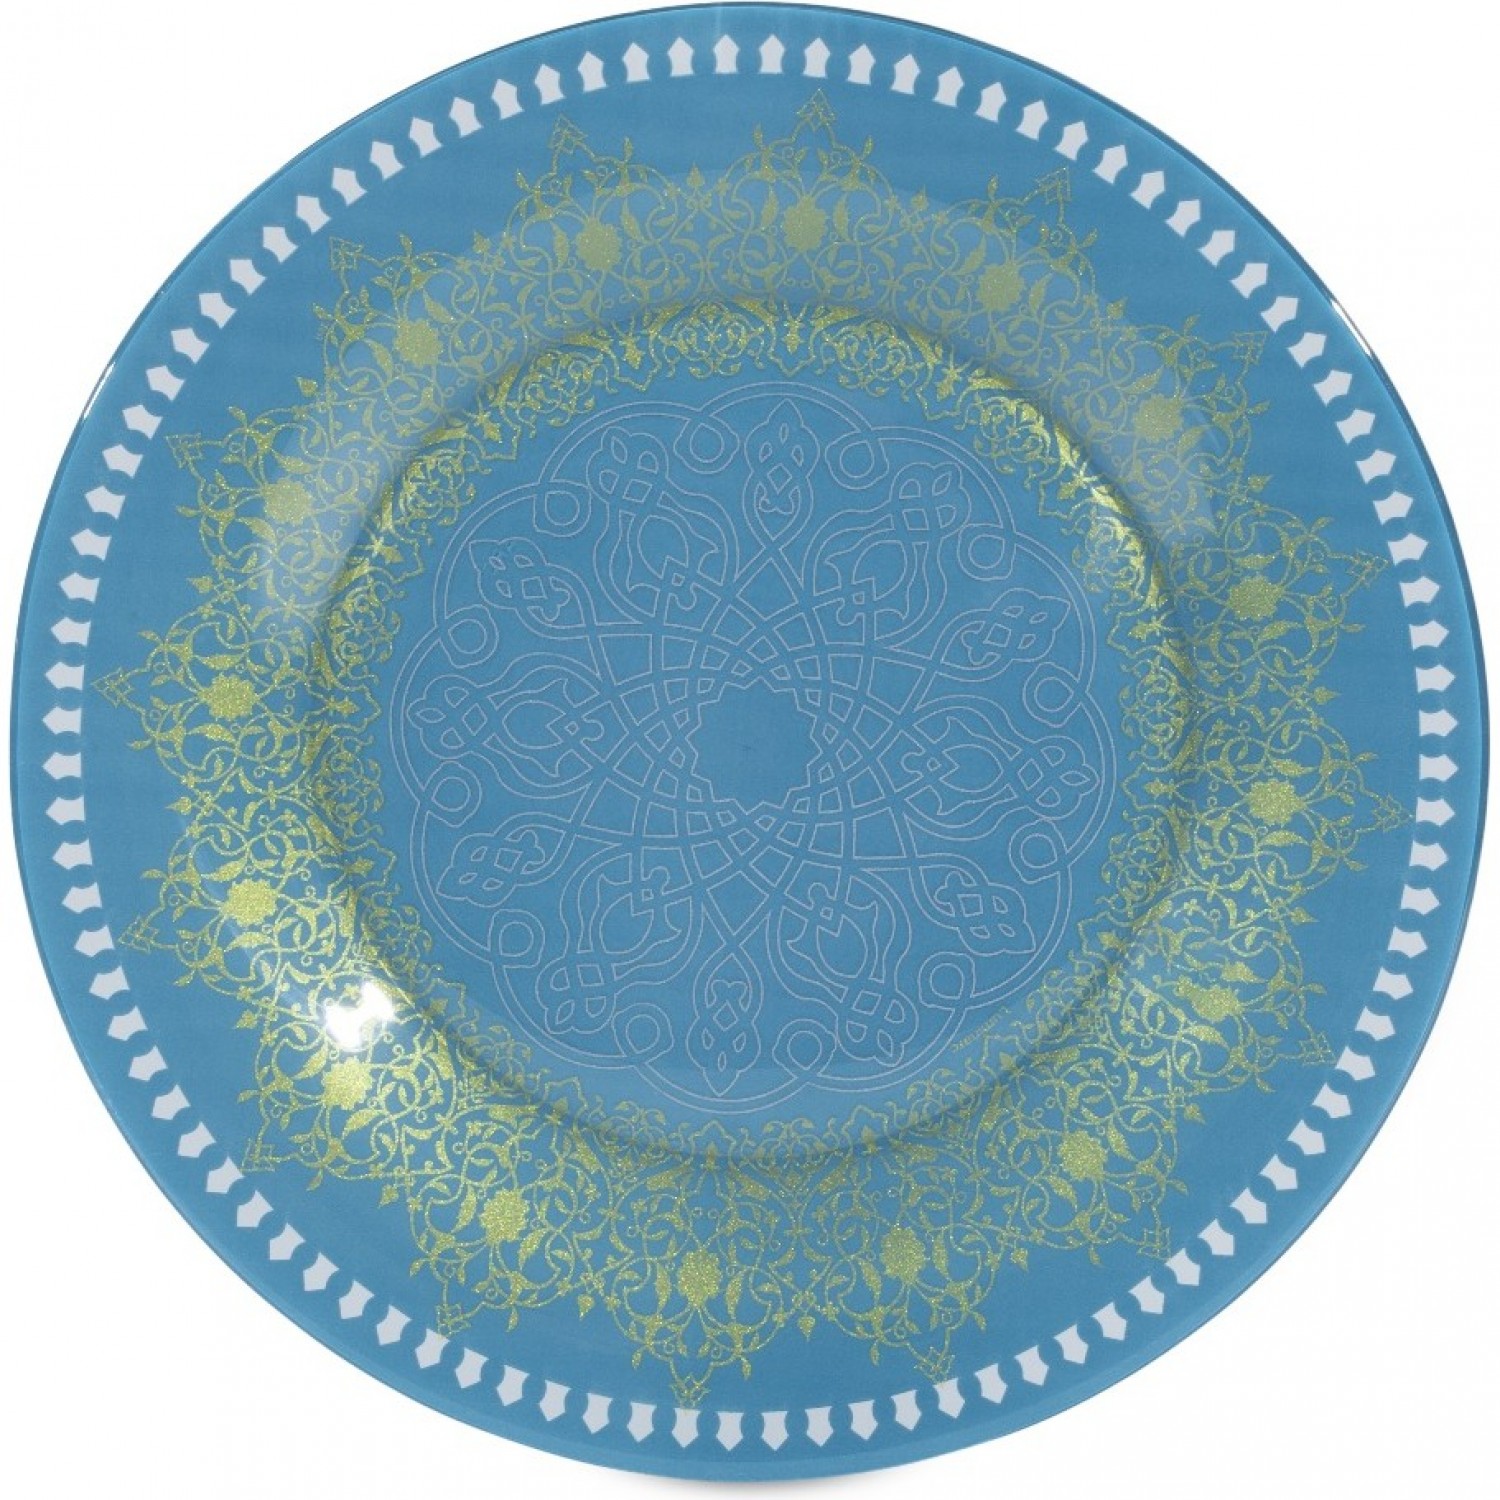 Тарелка обеденная BAGATELLE TURQUOISE 25см LUMINARC Q8808 тарелка суповая bagatelle turquoise 21 5см luminarc q8810